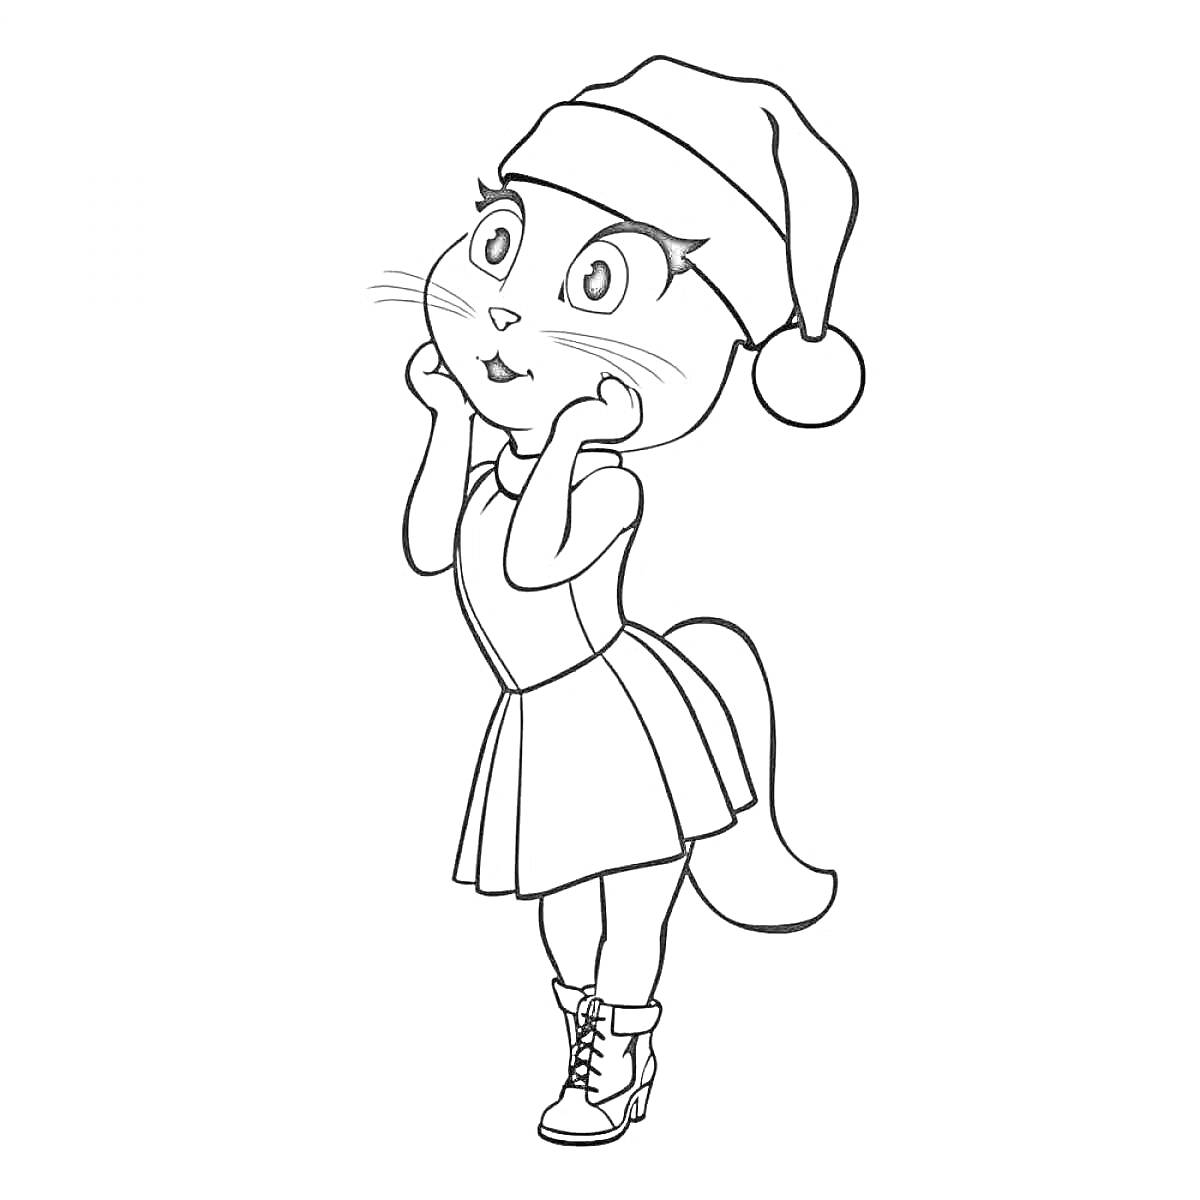 РаскраскаАнжела в шапке Деда Мороза, стоящая на задних лапах, в платье и ботинках